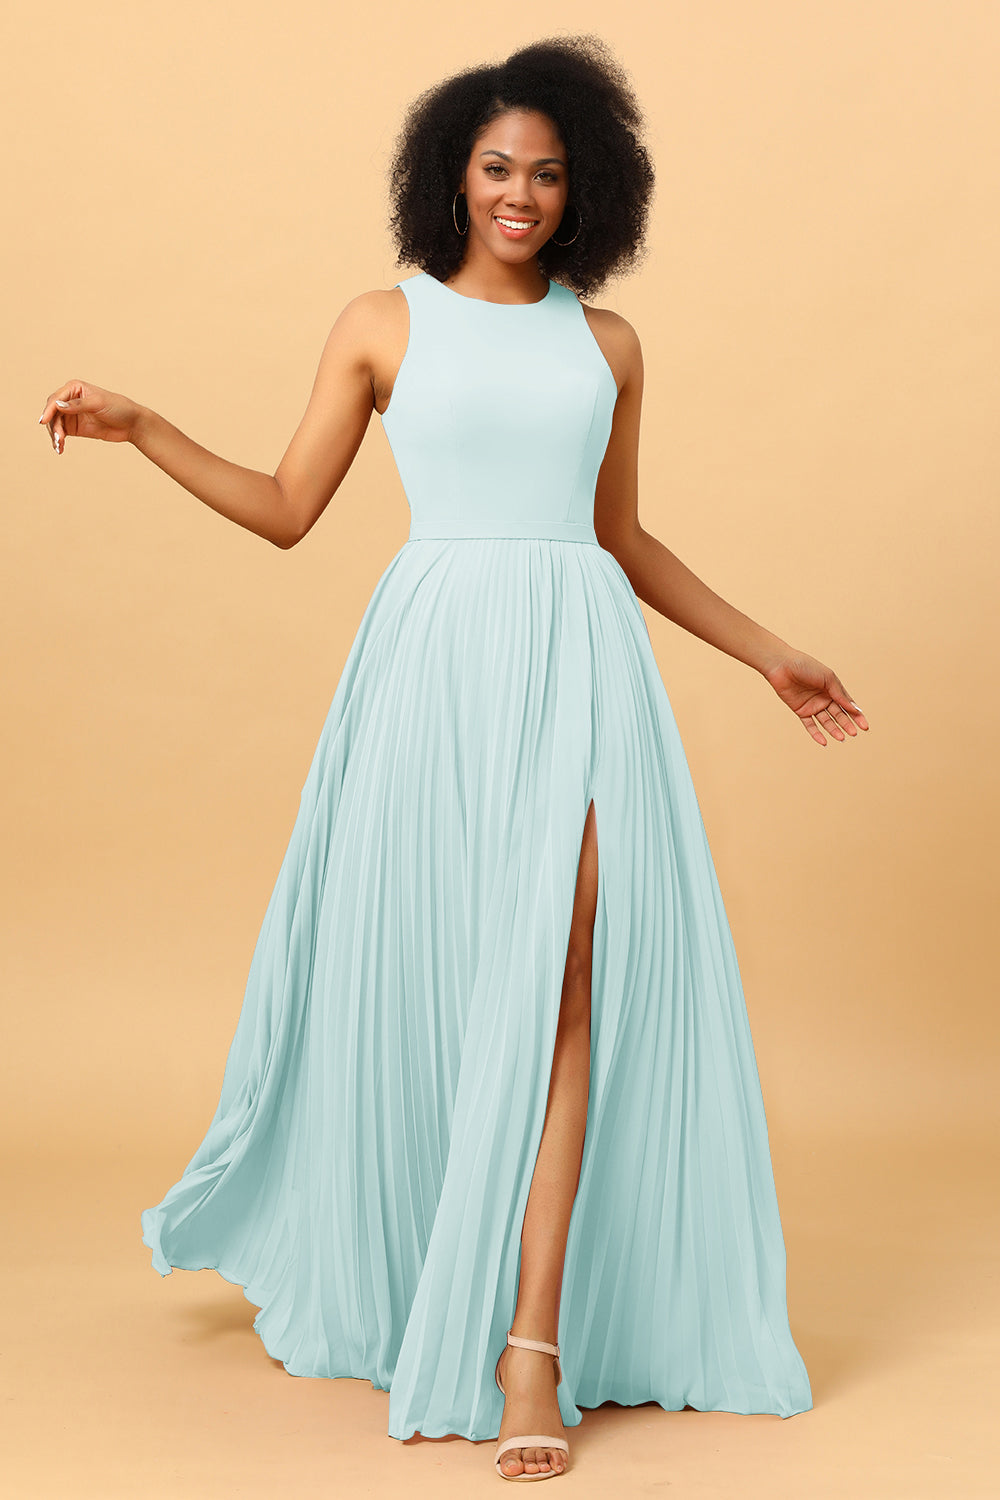 Ink Blue Prom Dresses|elegant Ink Blue Velvet Evening Dress - High Neck  Applique A-line Gown